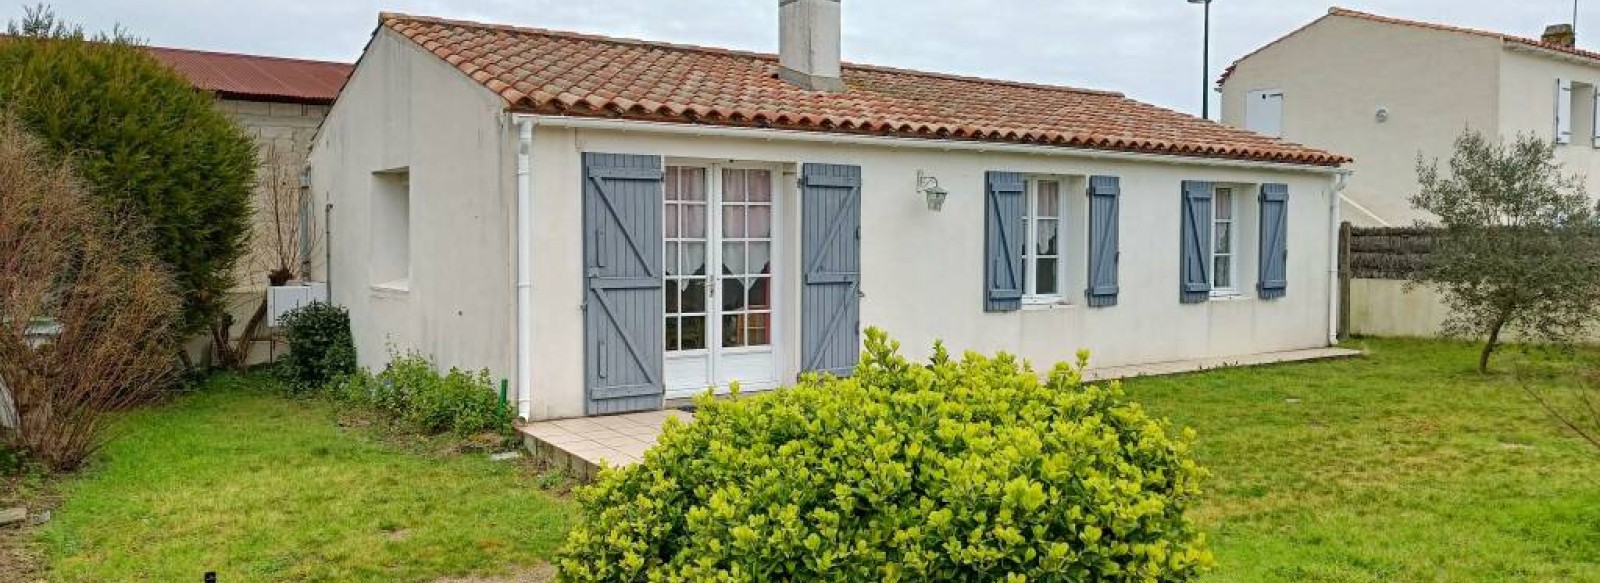 Maison de vacances proche de la plage du Midi a Barbatre sur Noirmoutier